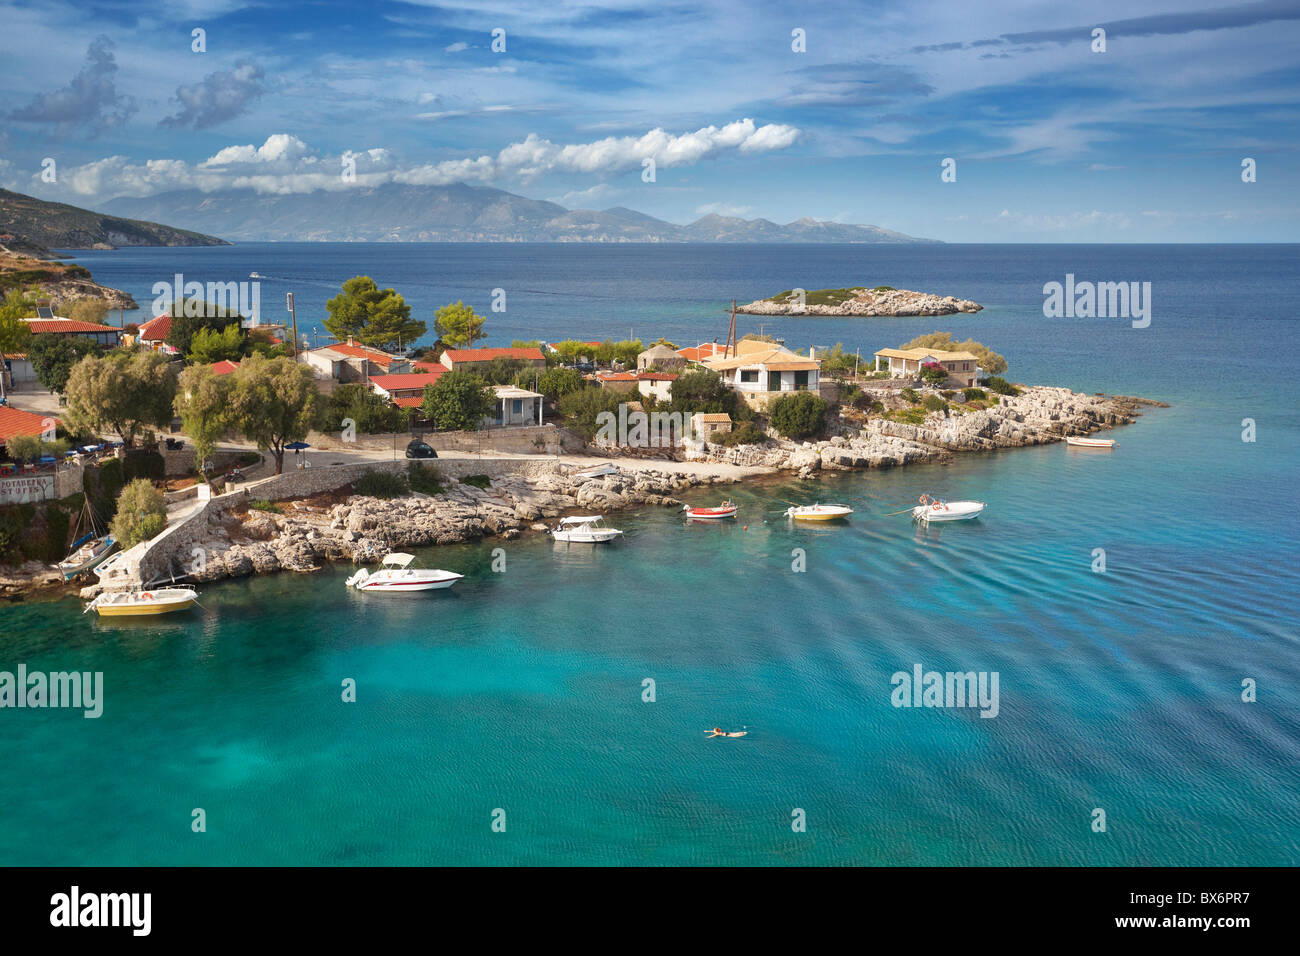 L'île de Zakynthos, Grèce - Mer Ionienne, Macro Nisi Banque D'Images